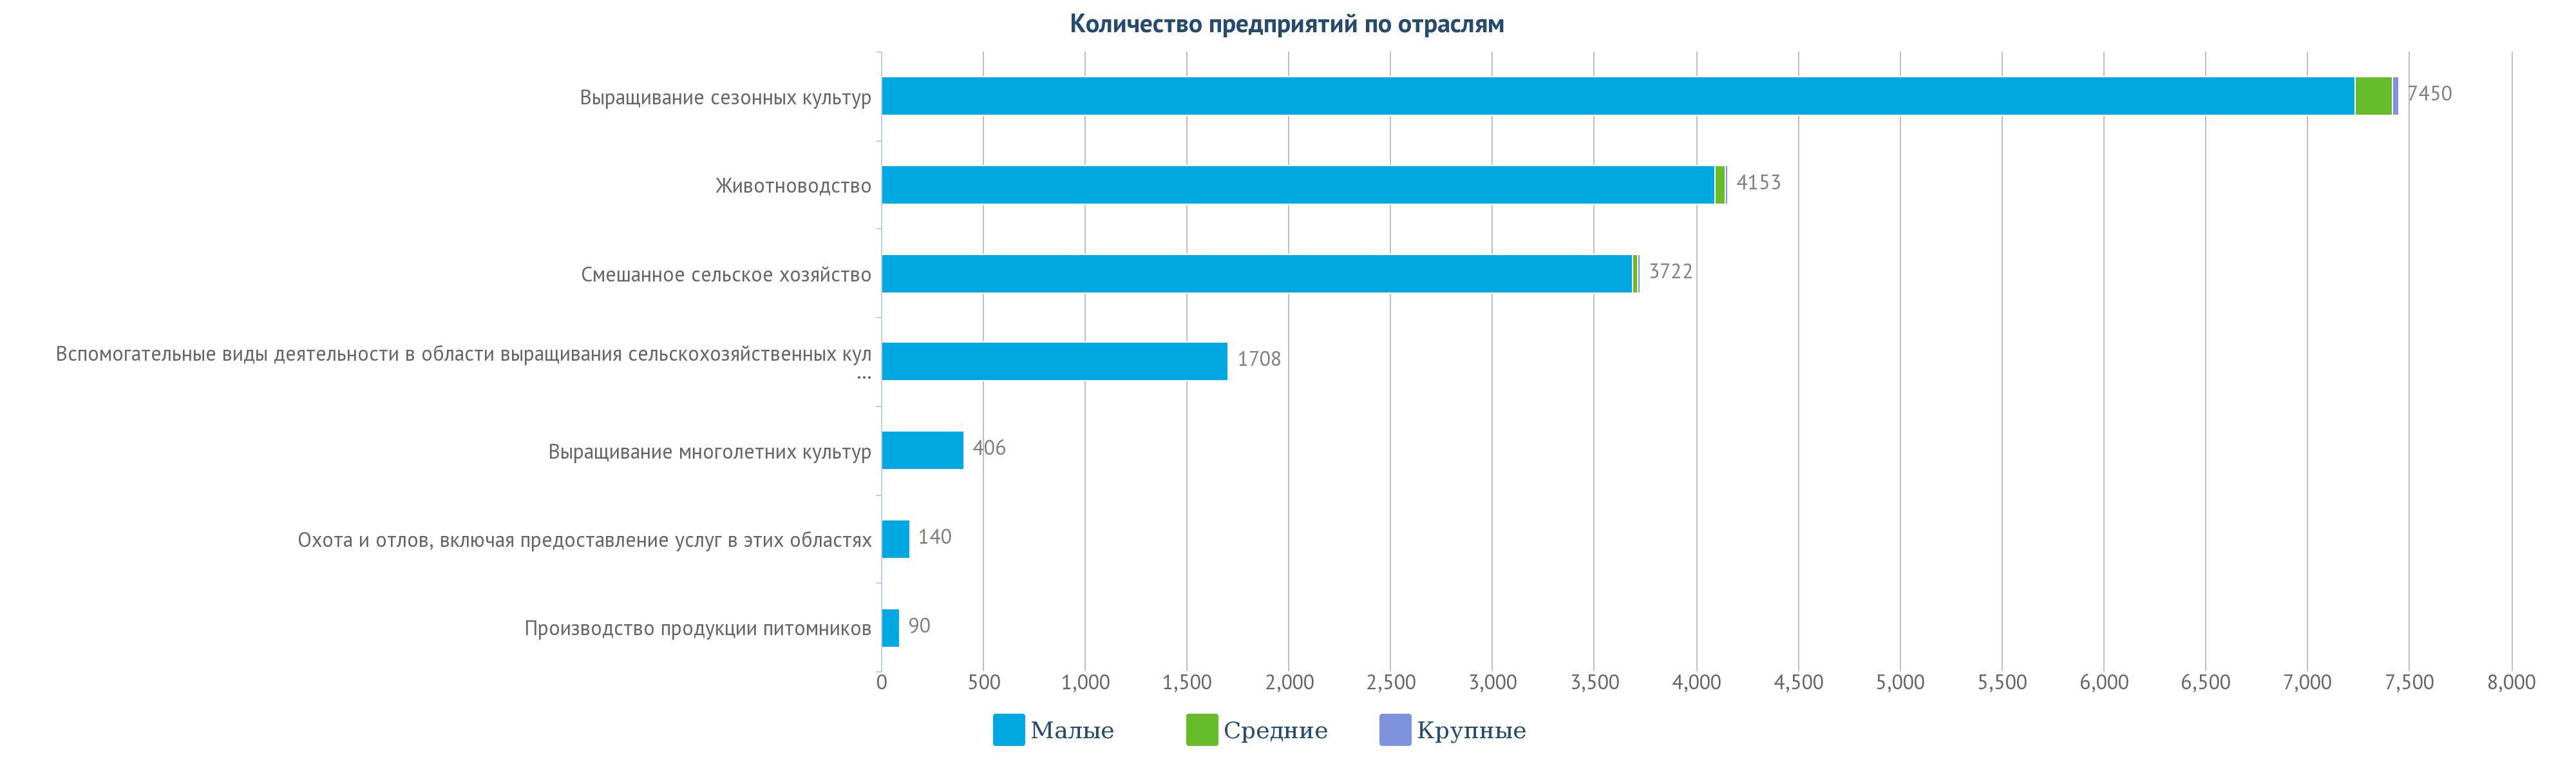 в Казахстане зарегистрировано 17,669 организаций, занятых в сельскохозяйственной деятельности